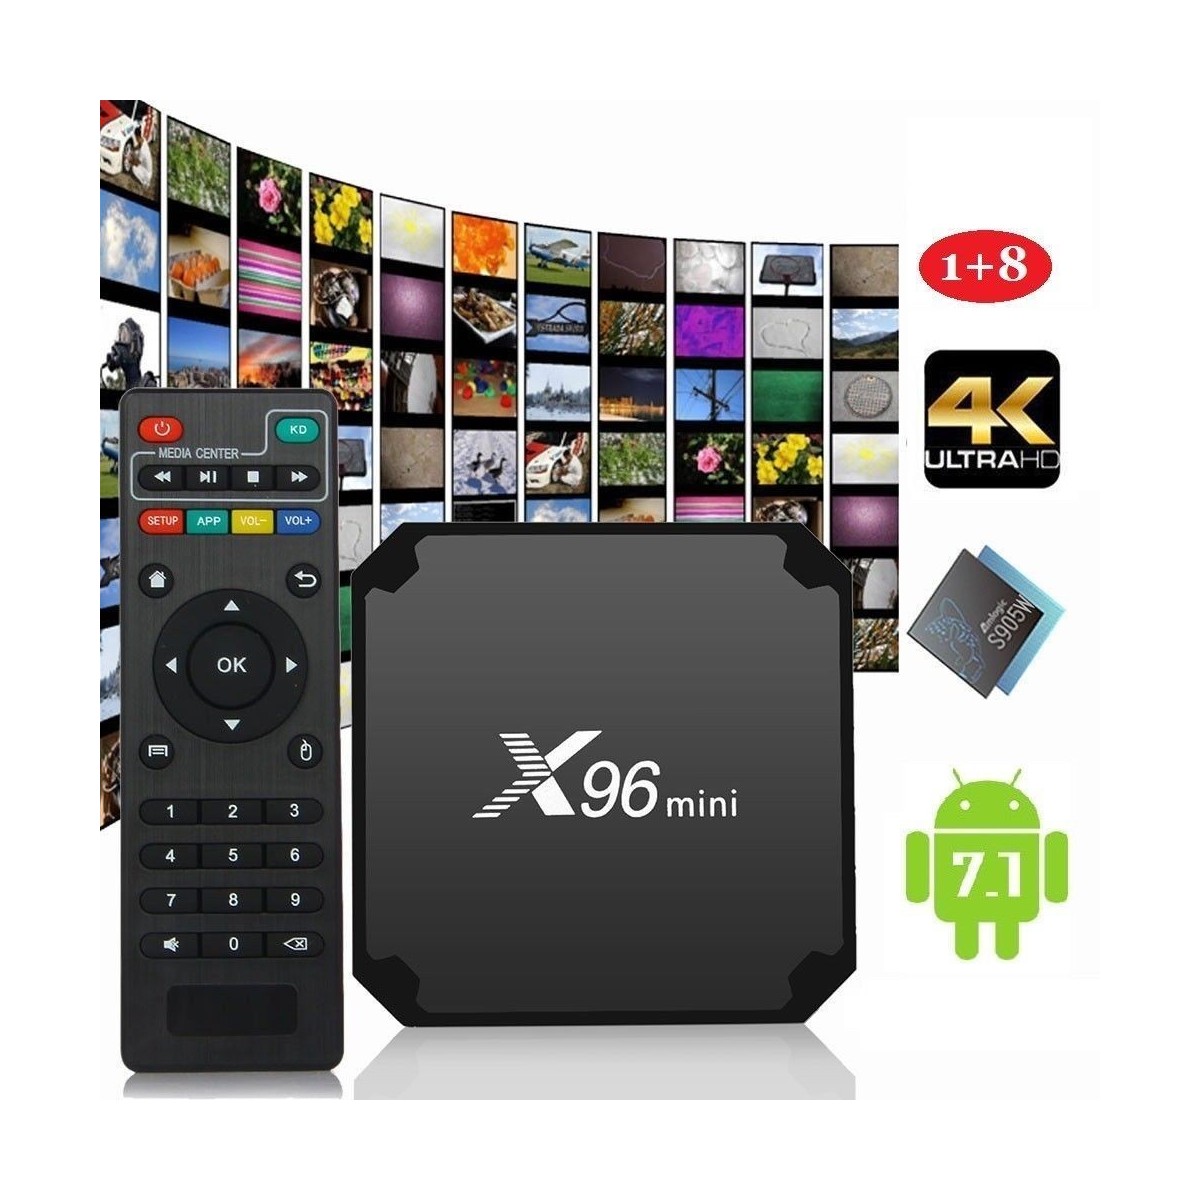 Décodeur multimédias Smart TV Box Android 7.1 X96 Mini 1G/8G avec S